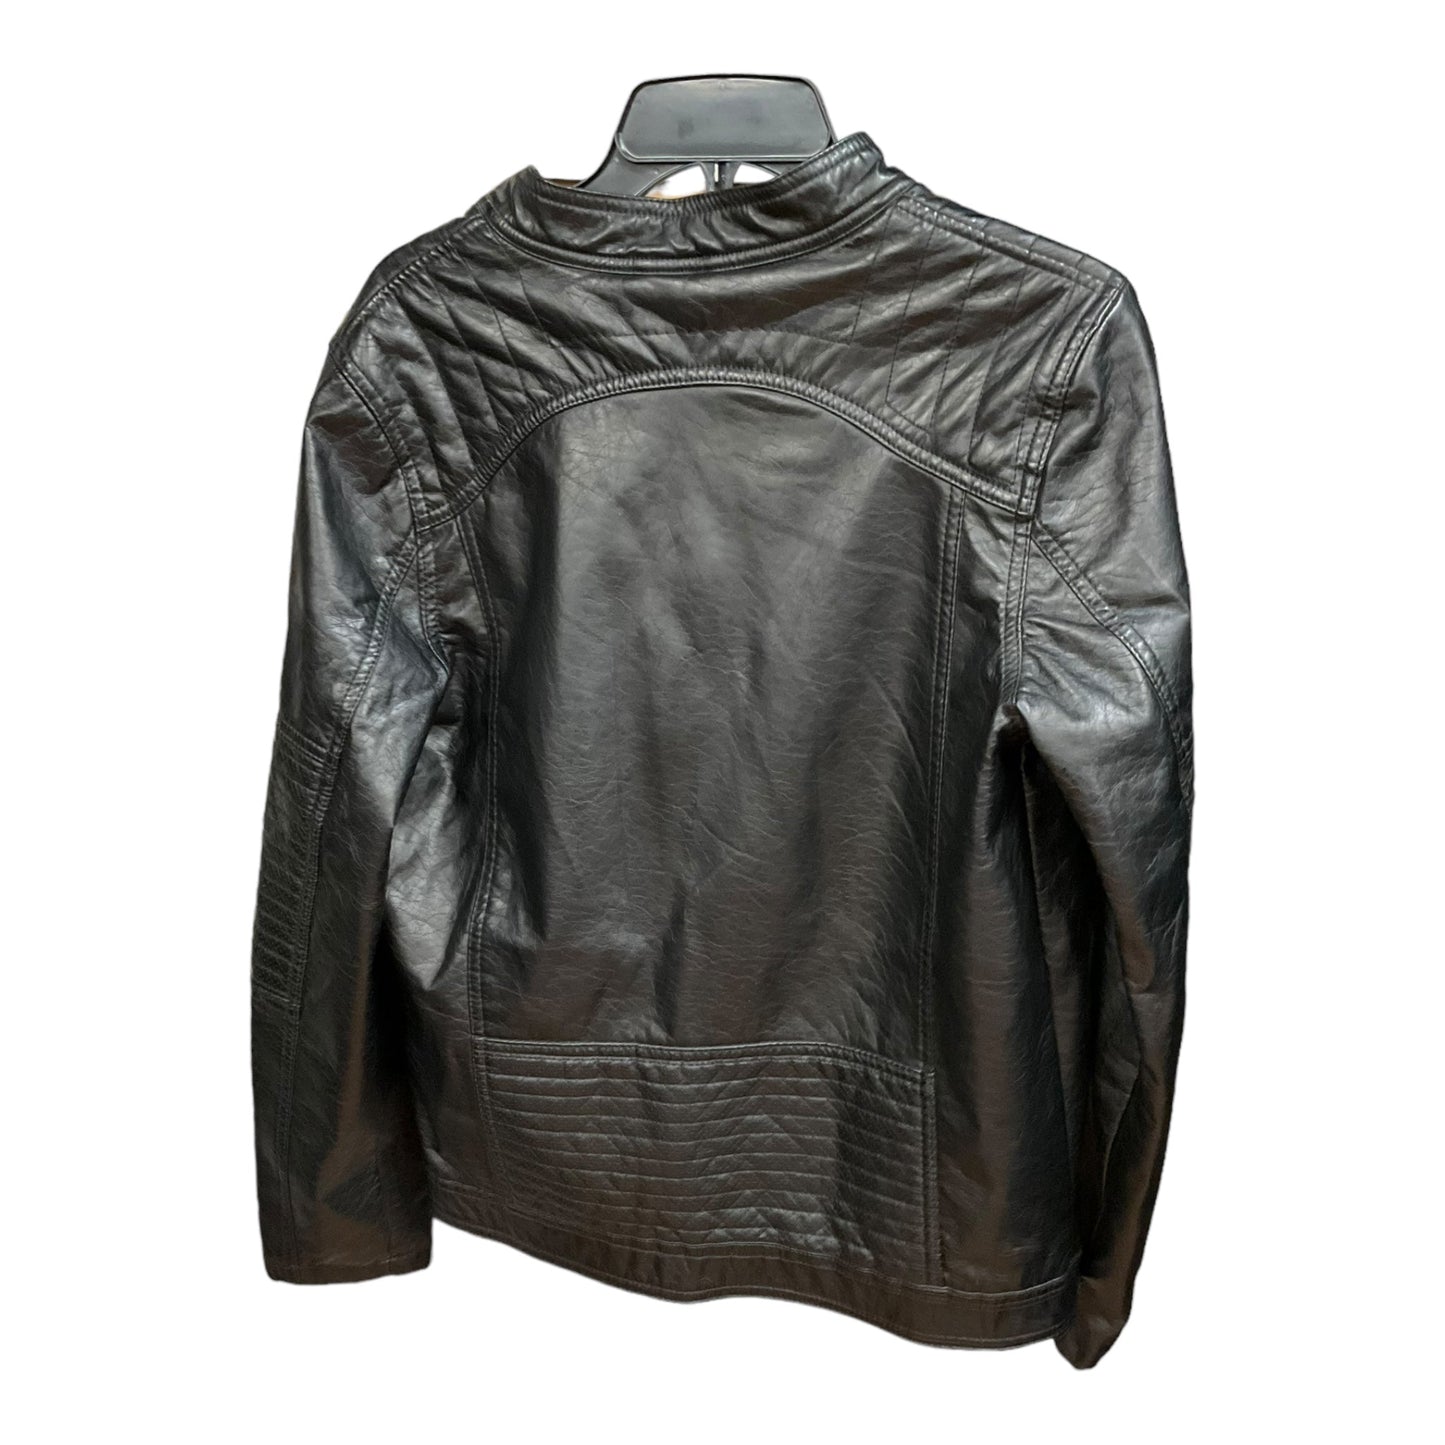 Black Jacket Moto Clothes Mentor, Size Xl